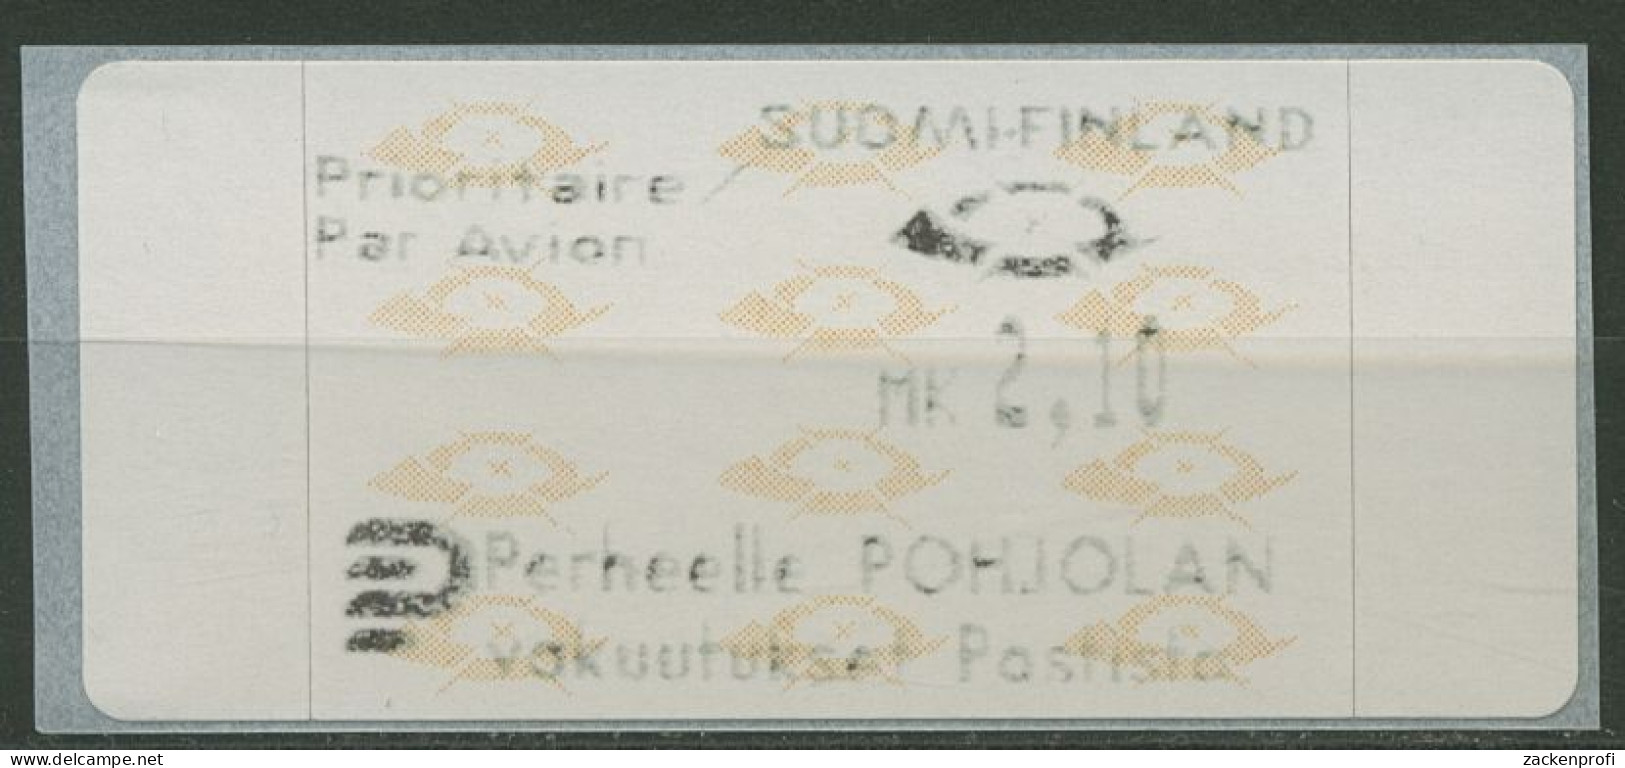 Finnland Automatenmarken 1992 Posthörner Einzelwert ATM 12.3 Z6 Postfrisch - Viñetas De Franqueo [ATM]